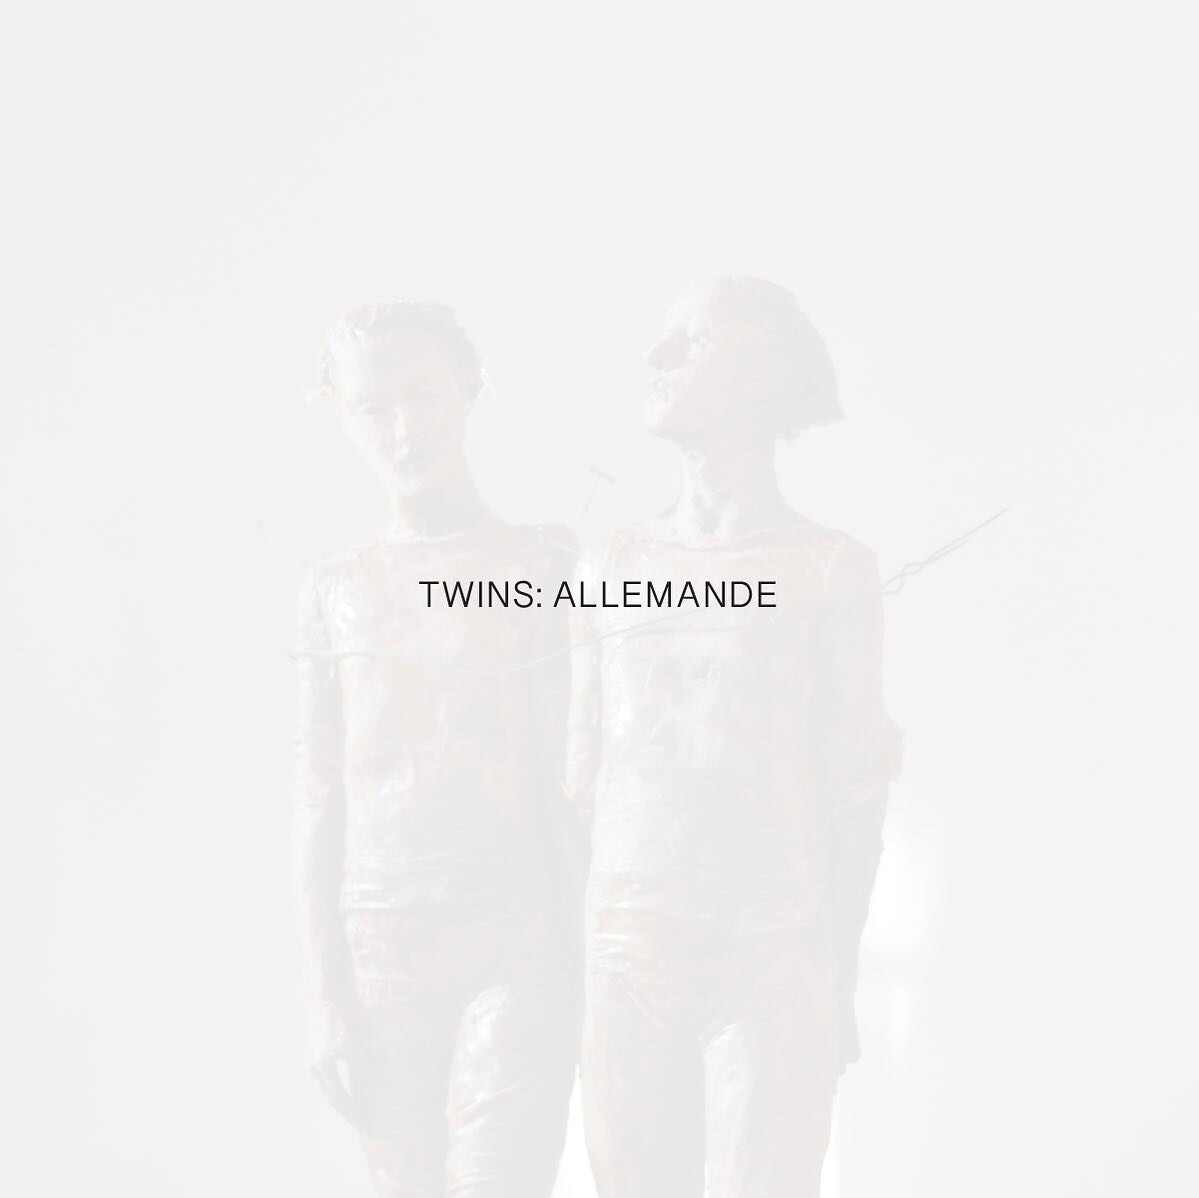 TWINS: ALLEMANDE